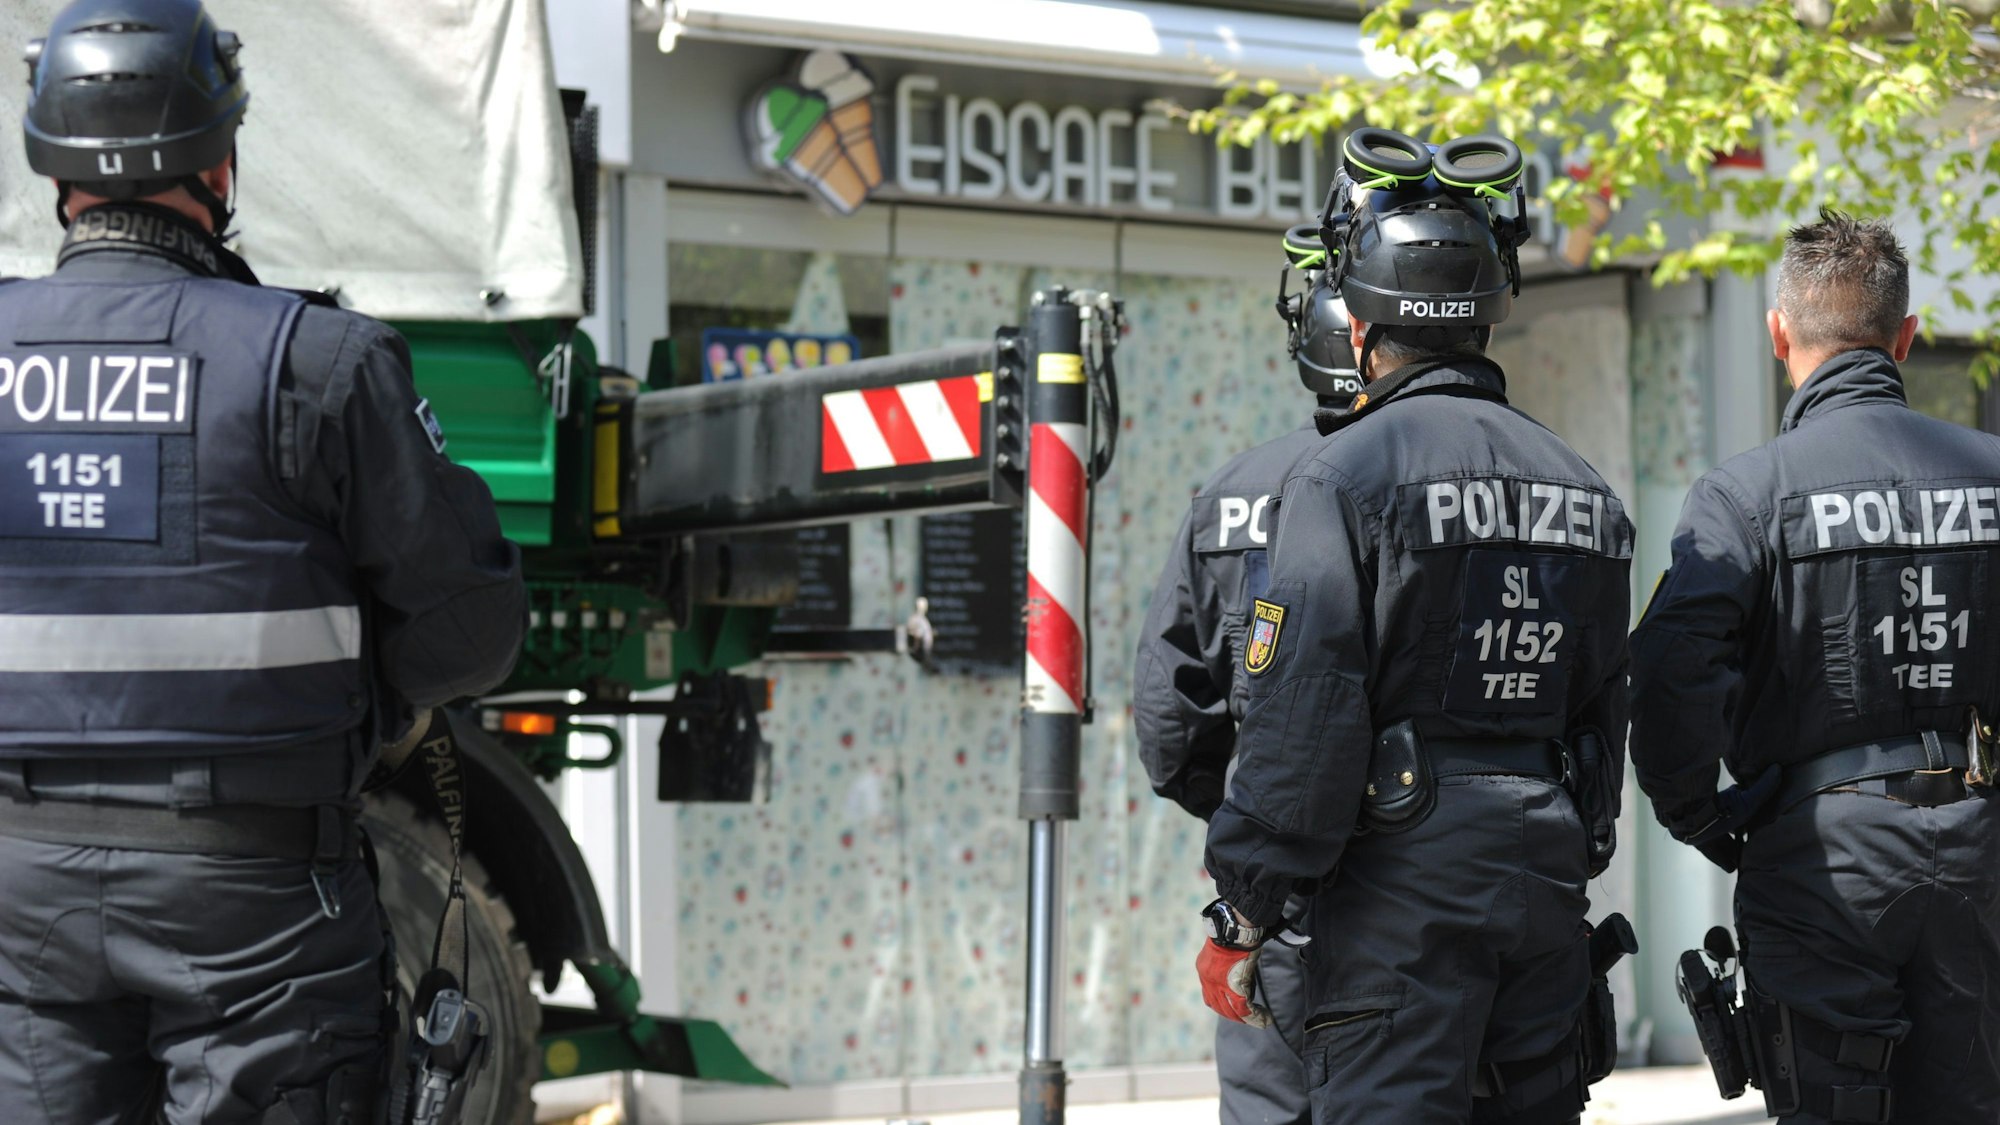 Polizisten sichern im Rahmen einer Razzia Beweismittel. Zu sehen sind Einsatzkräfte, auf deren Rücken "Polizei" zu lesen ist. Sei stehen vor einem Eiscafé.